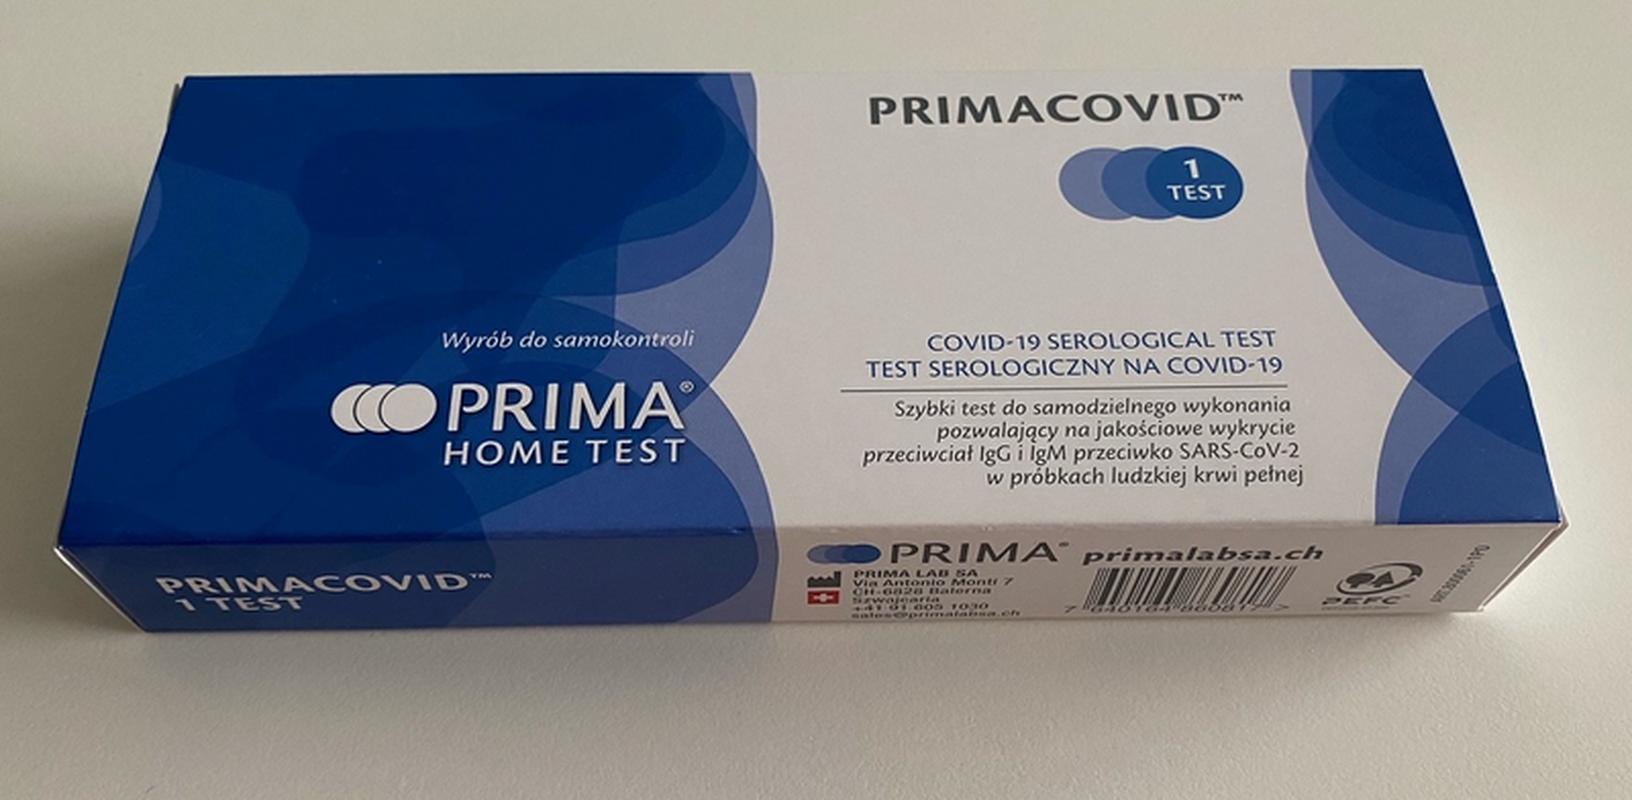 Сеть Biedronka первой в Польше начинает продавать тесты на антитела COVID-19